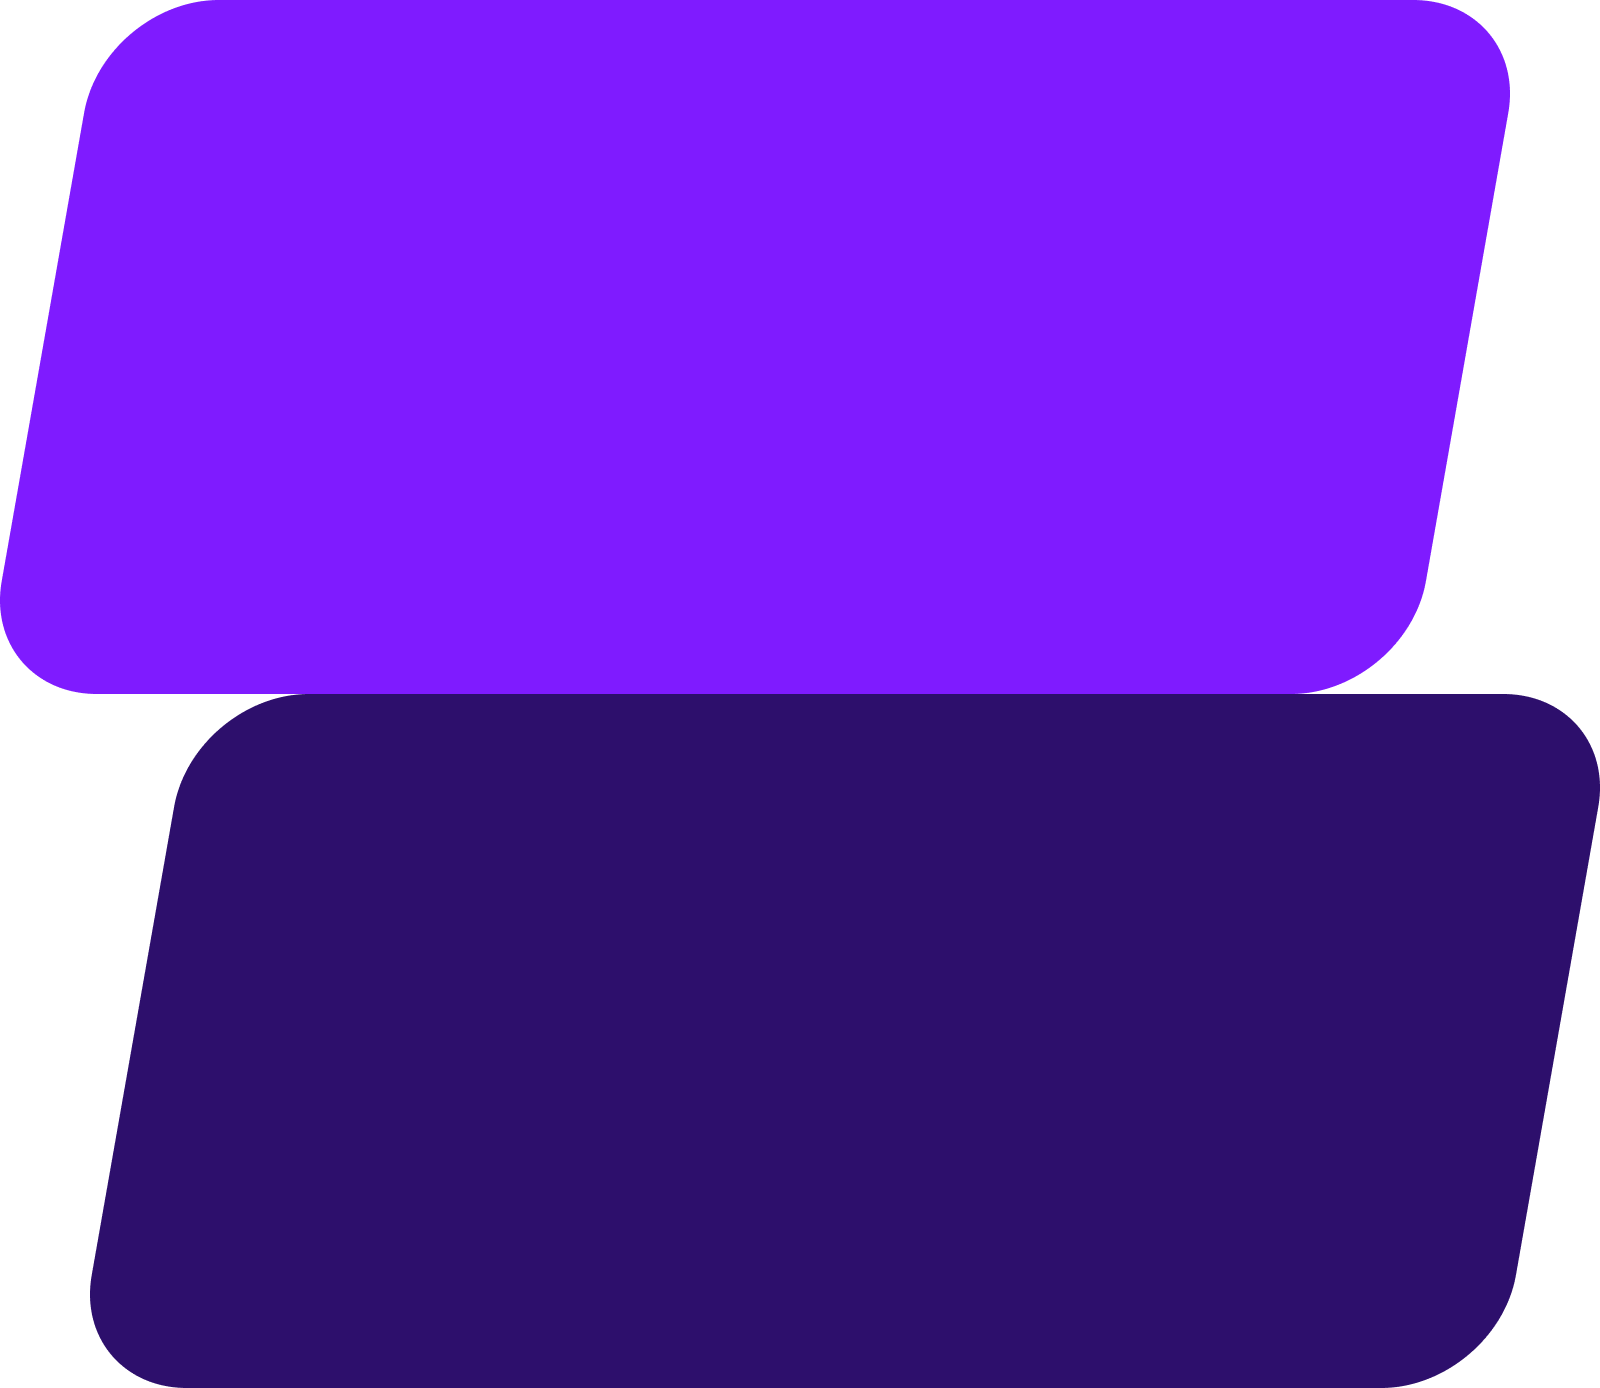 Formes graphiques abstraites de couleur violette sur fond transparent.